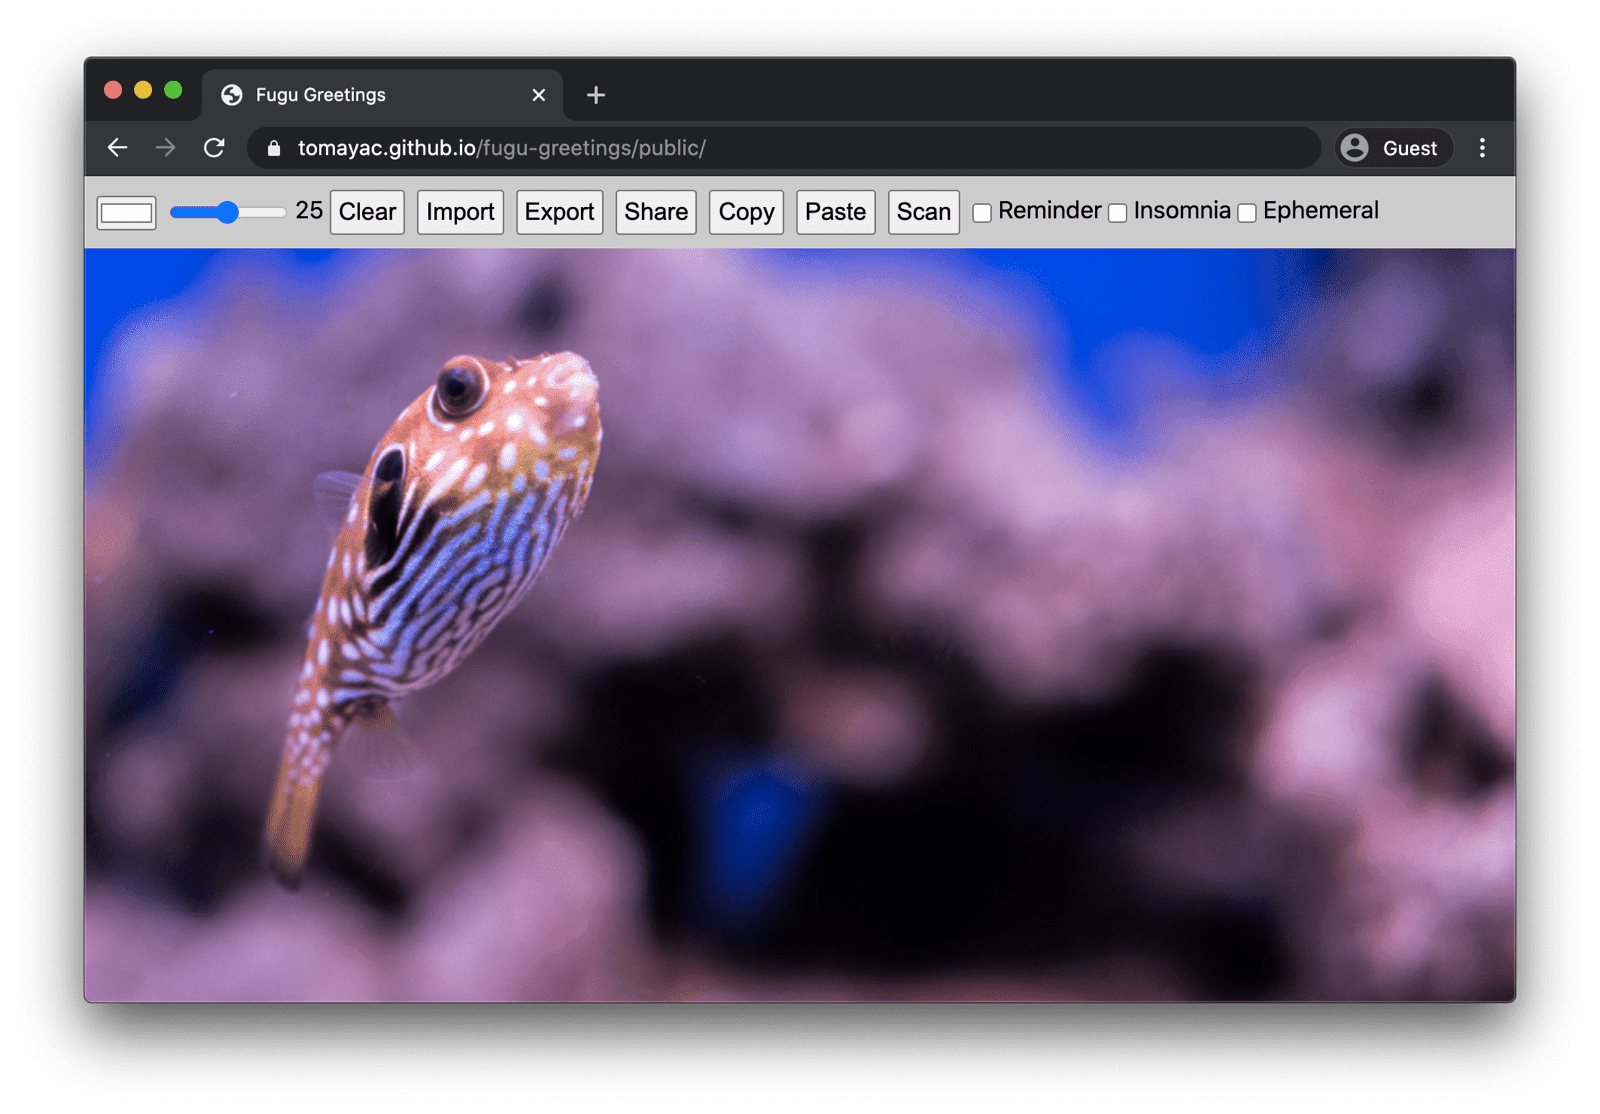 Aplikacja Fugu Greetings uruchomiona w przeglądarce Chrome na komputery, pokazująca wiele dostępnych funkcji.